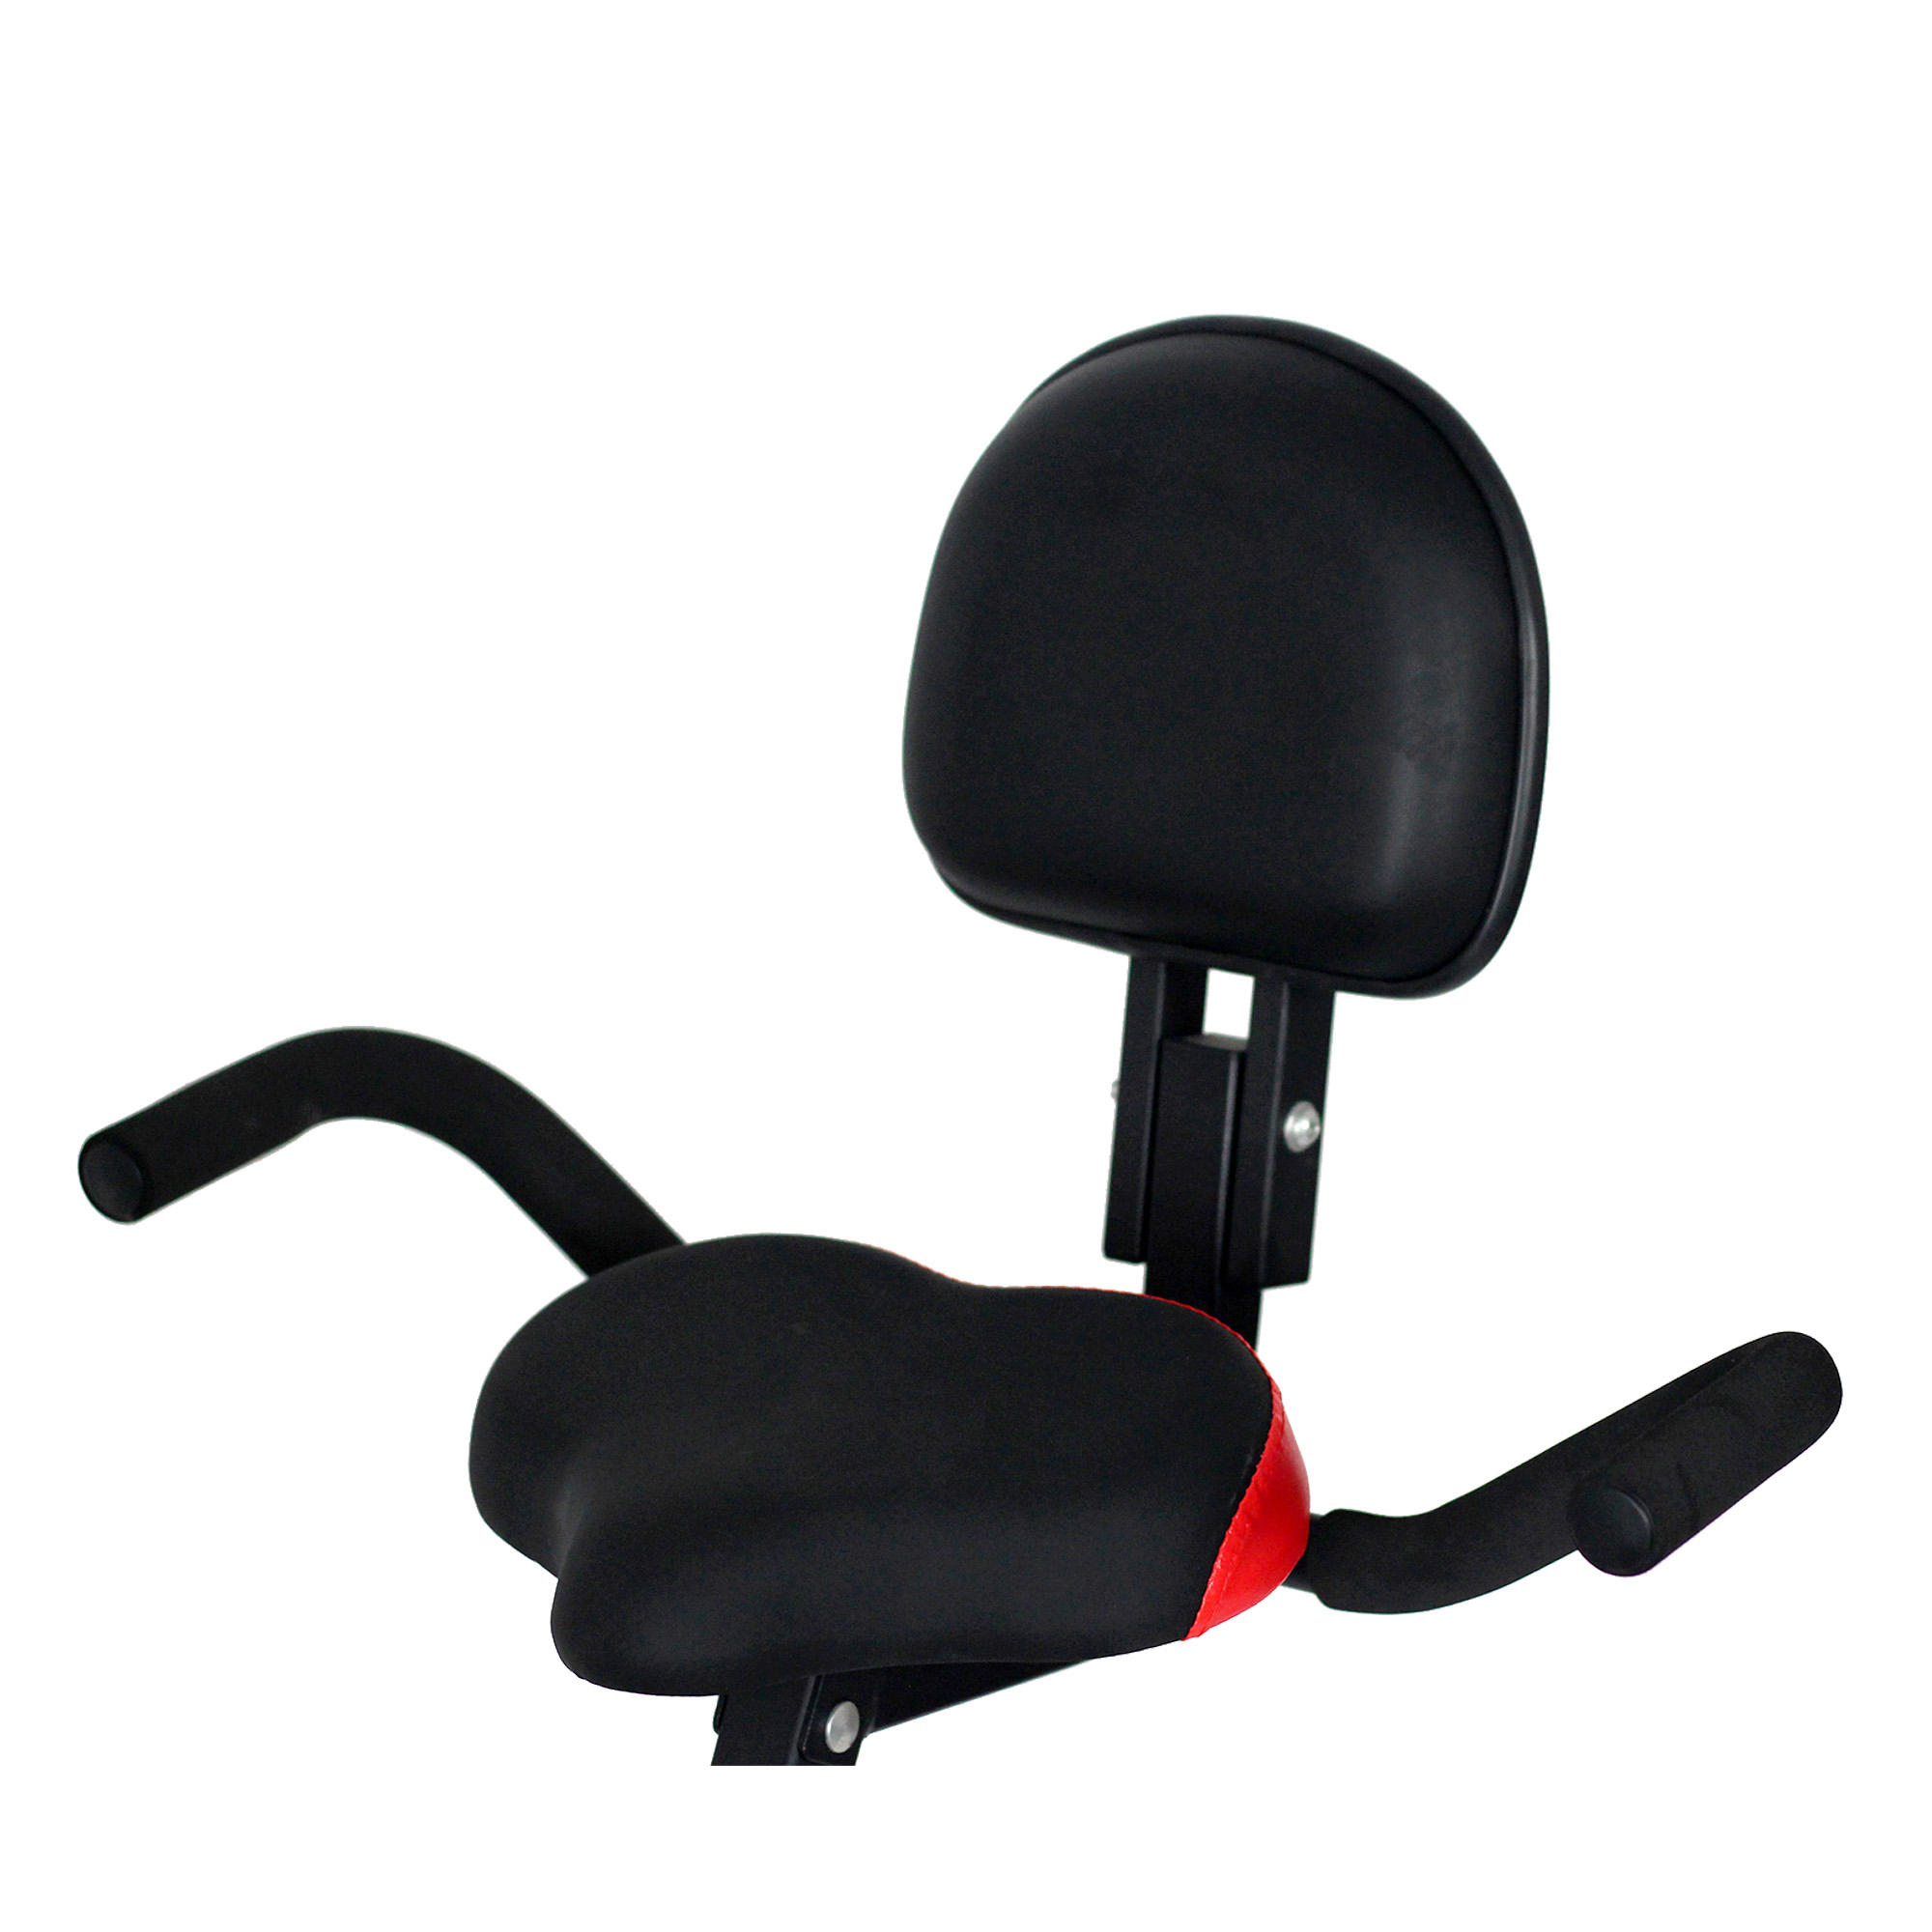 HY-B8020 Magnetic Training folding  backrest exercise Bike